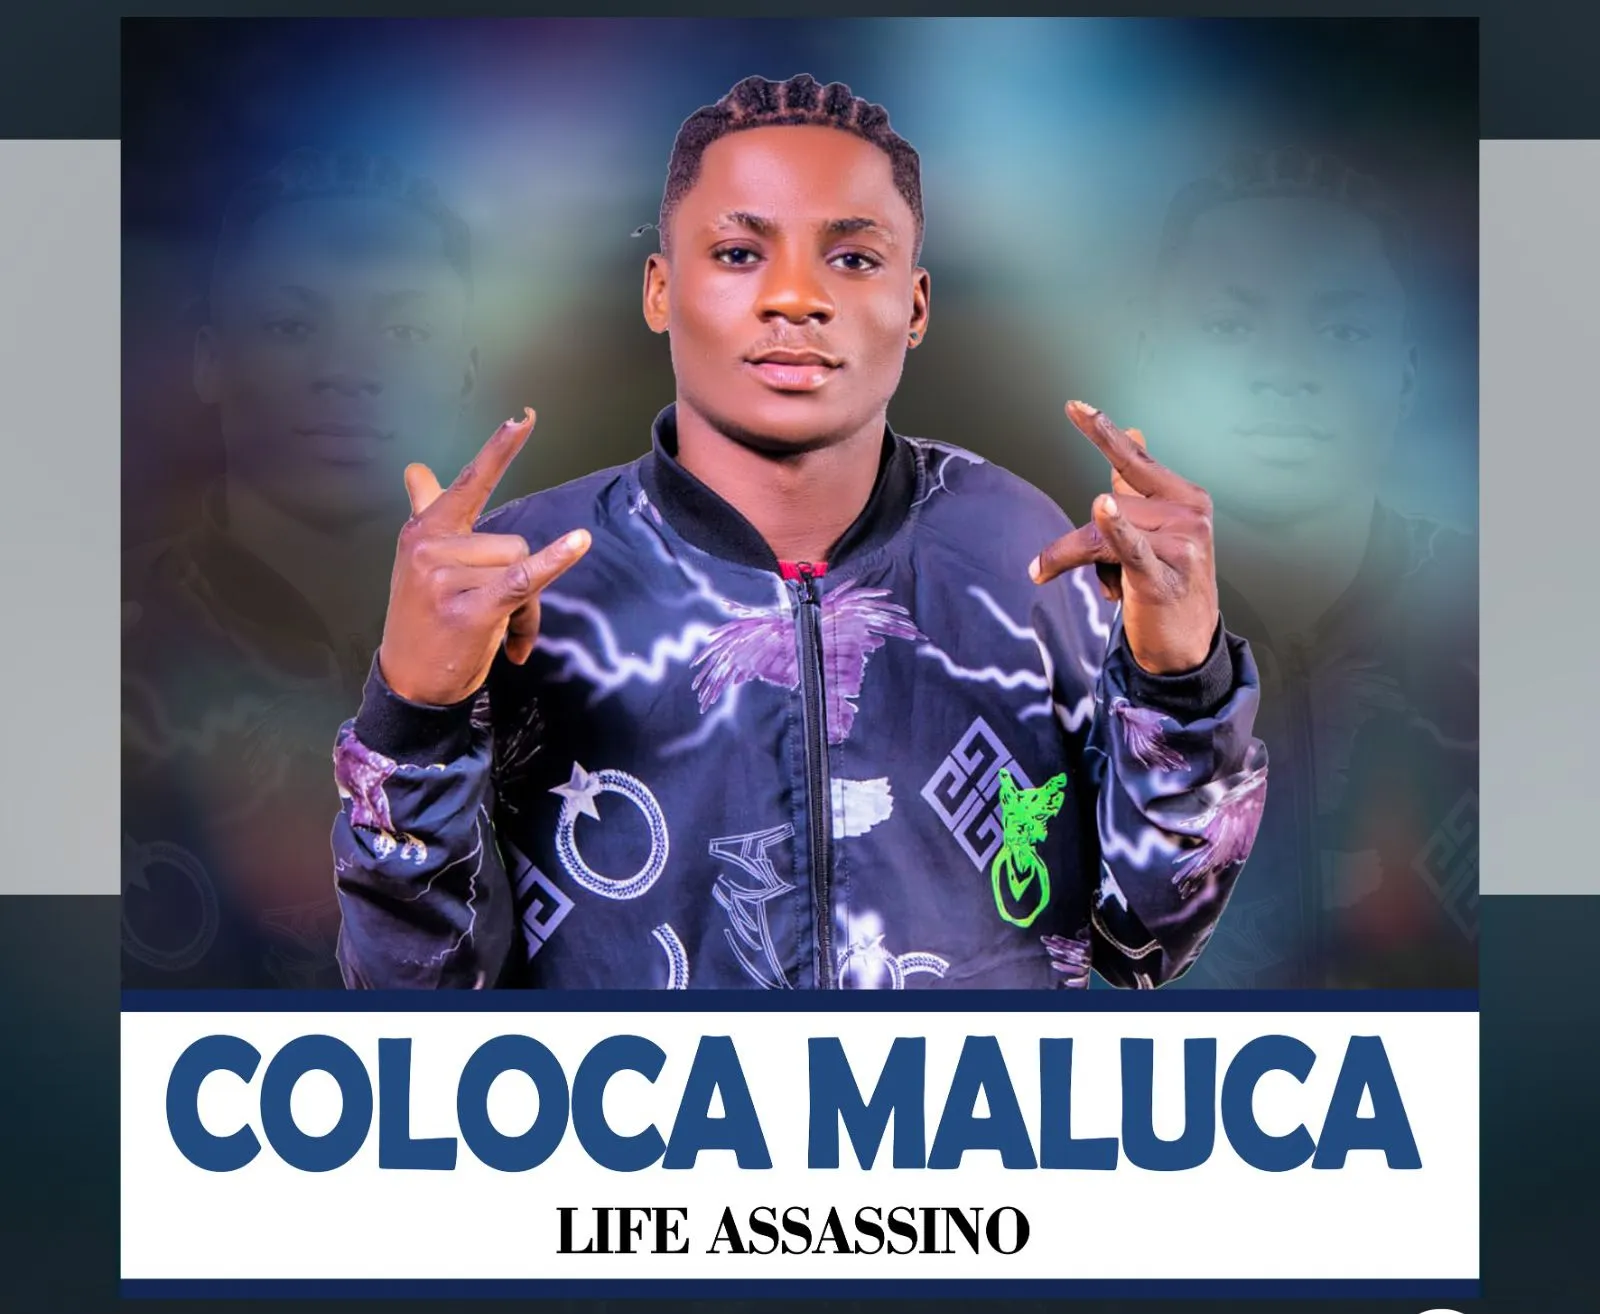 Life Assassino - Coloca Maluca (Afro House)